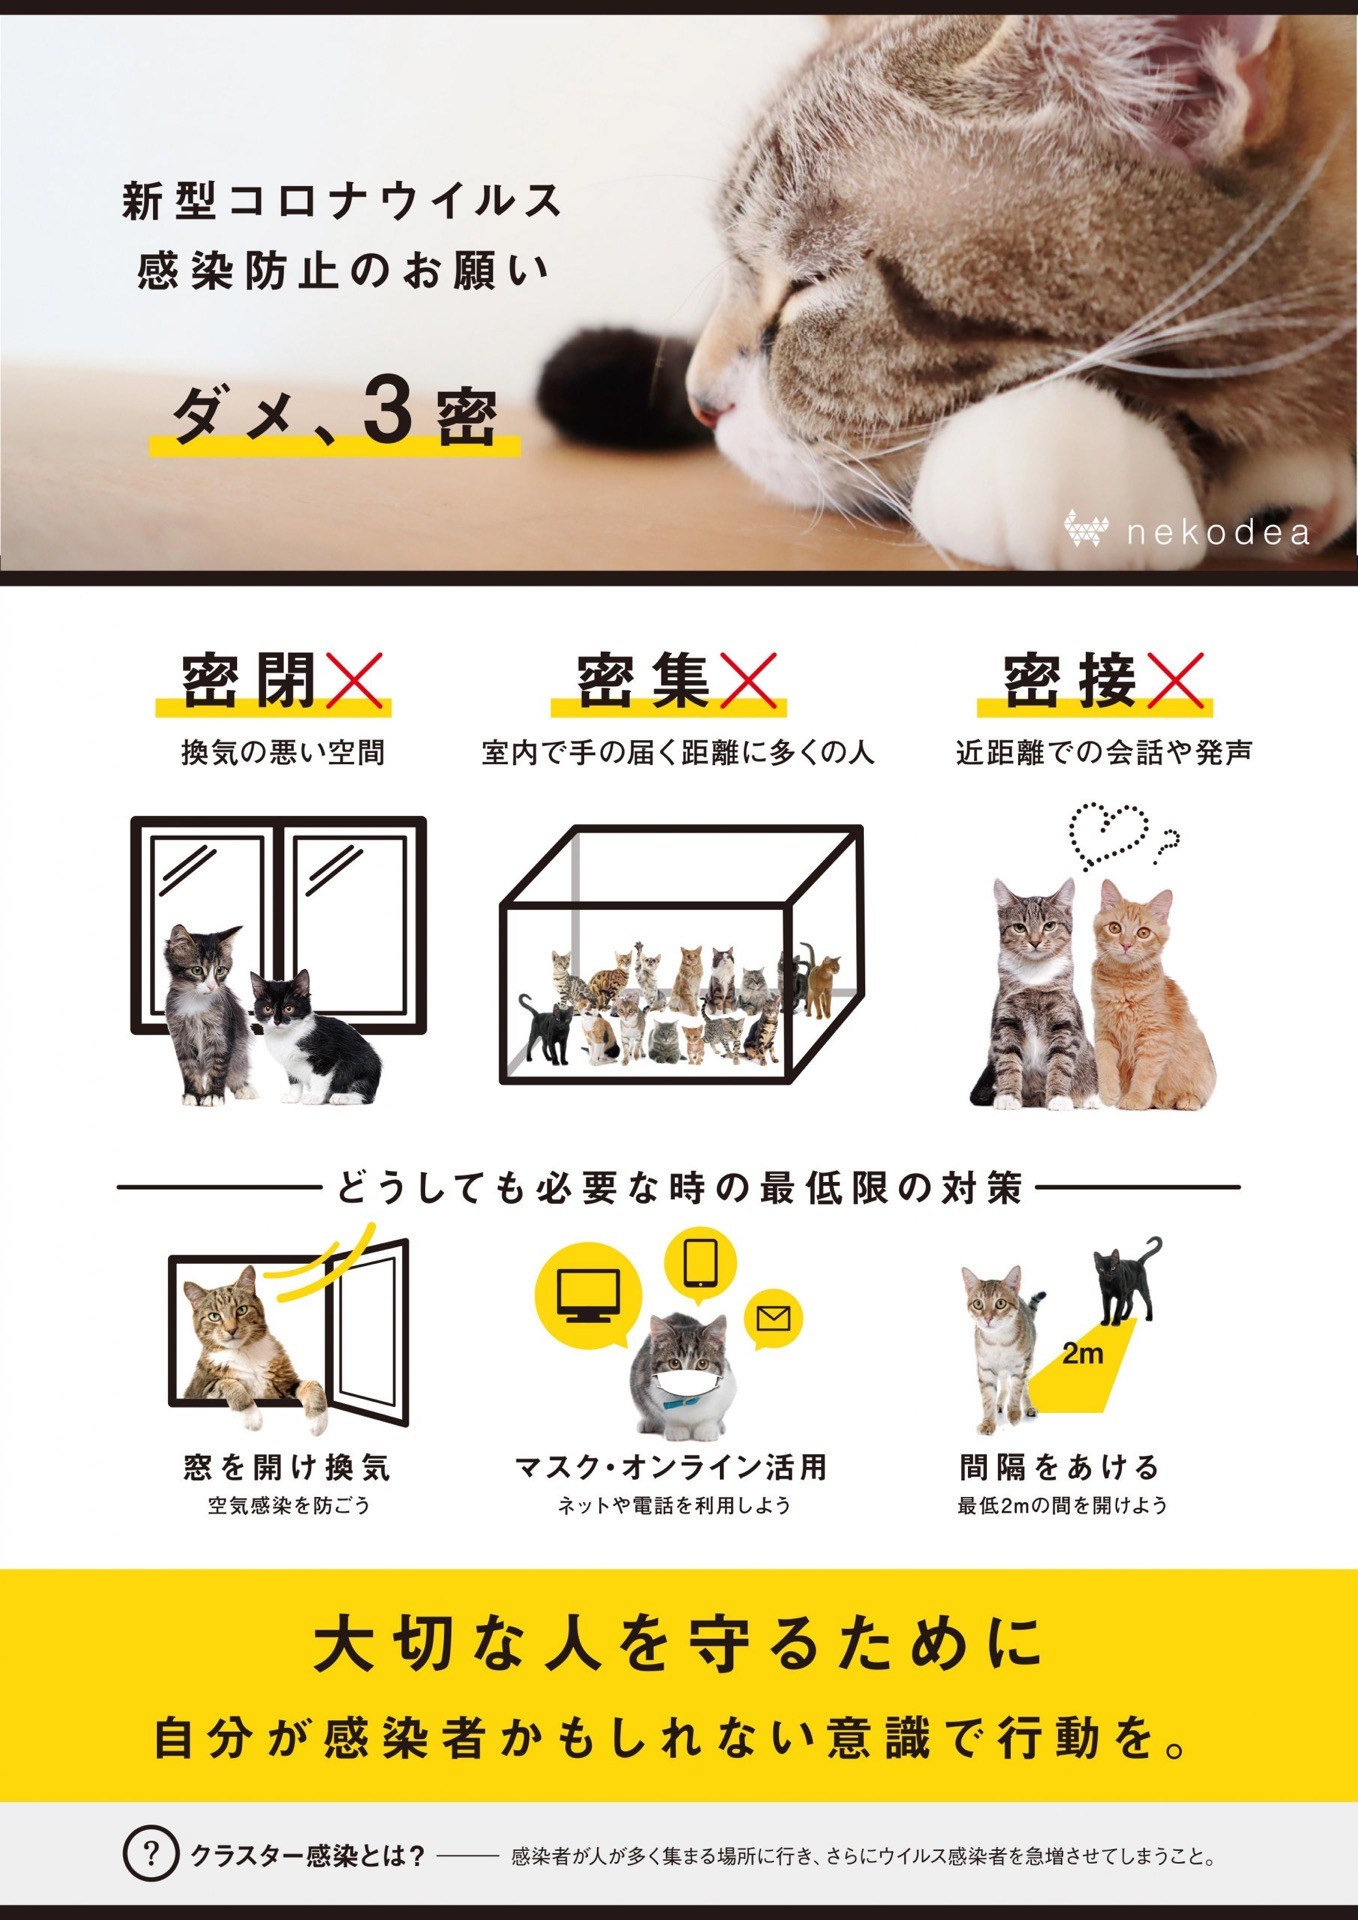 「3密」防止の啓発ポスター、猫バージョンを有志が作成